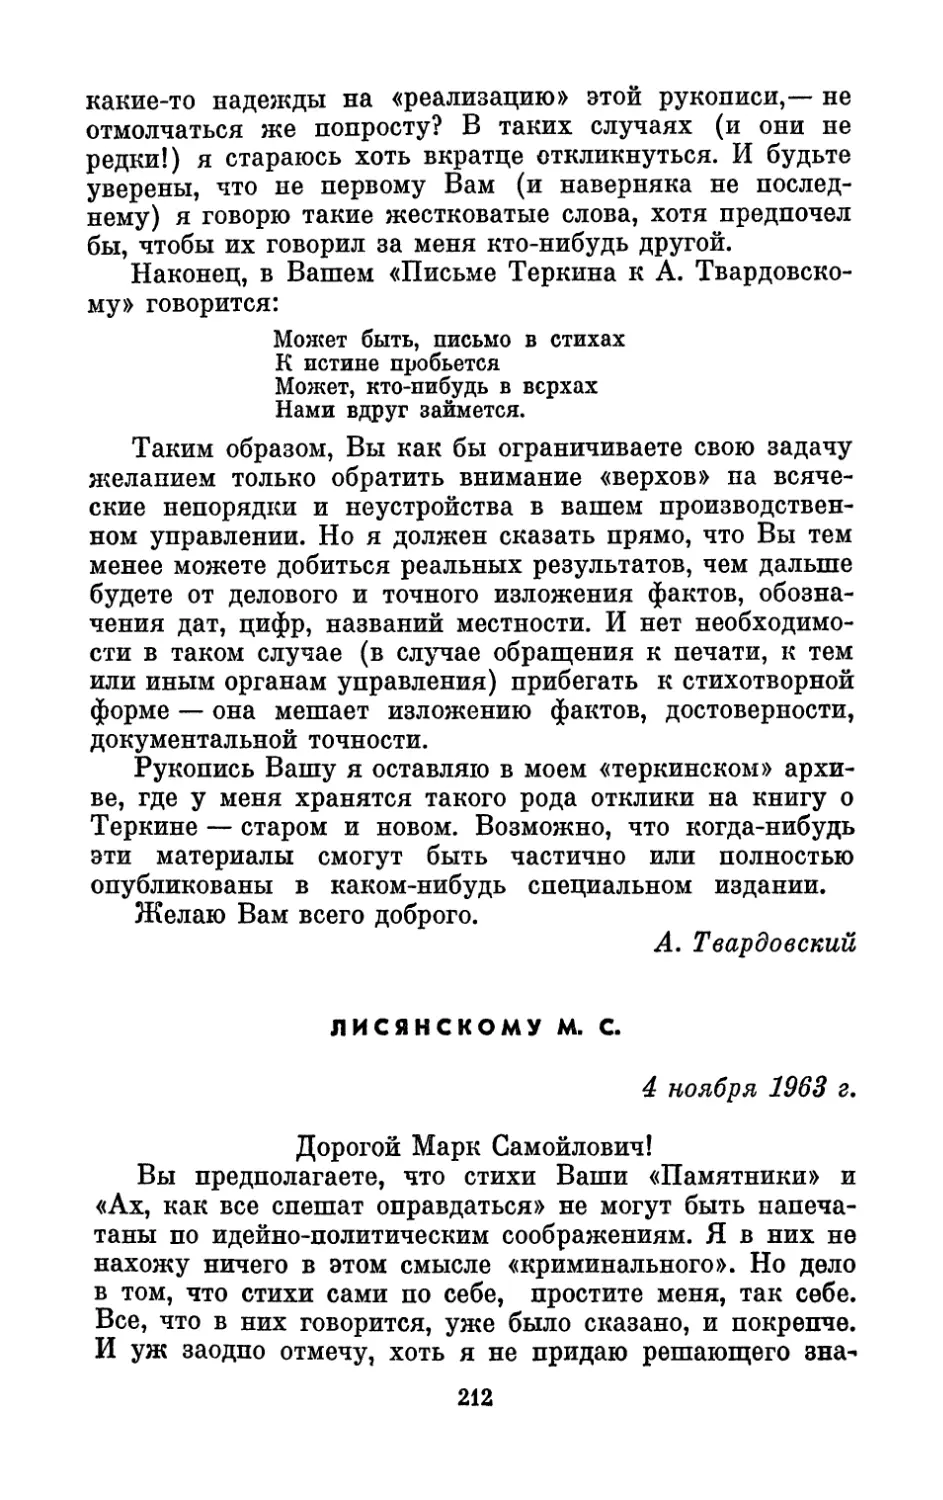 Лисянскому М. С., 4 ноября 1963 г.